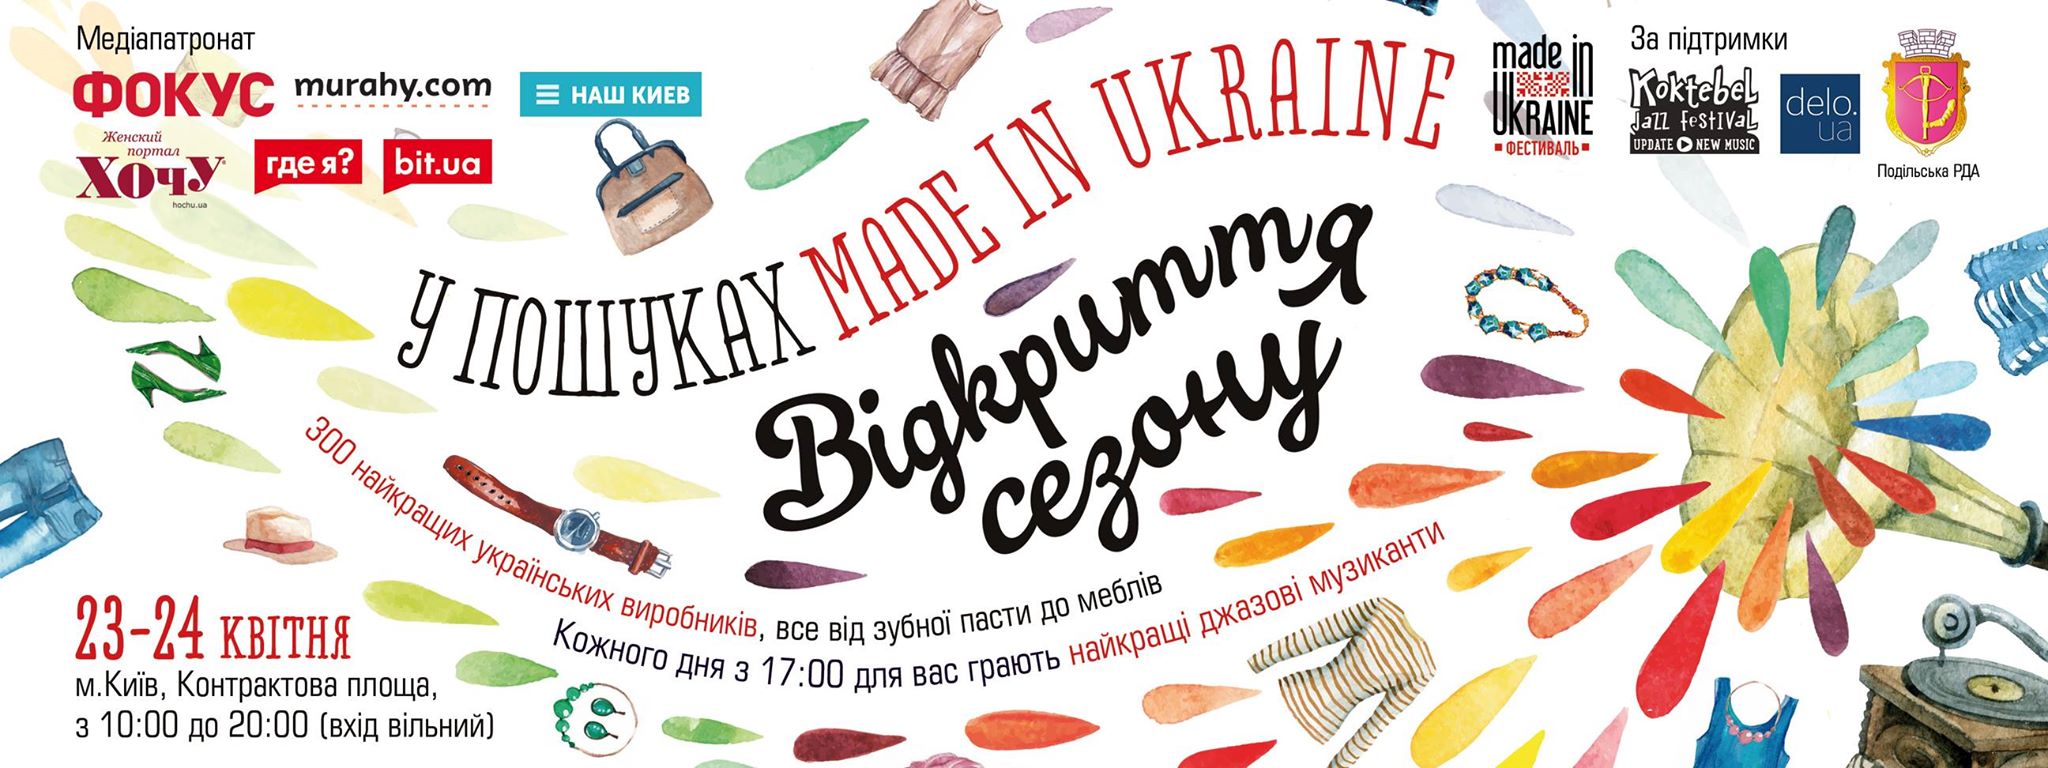 Фестиваль "В поисках Made in Ukraine"